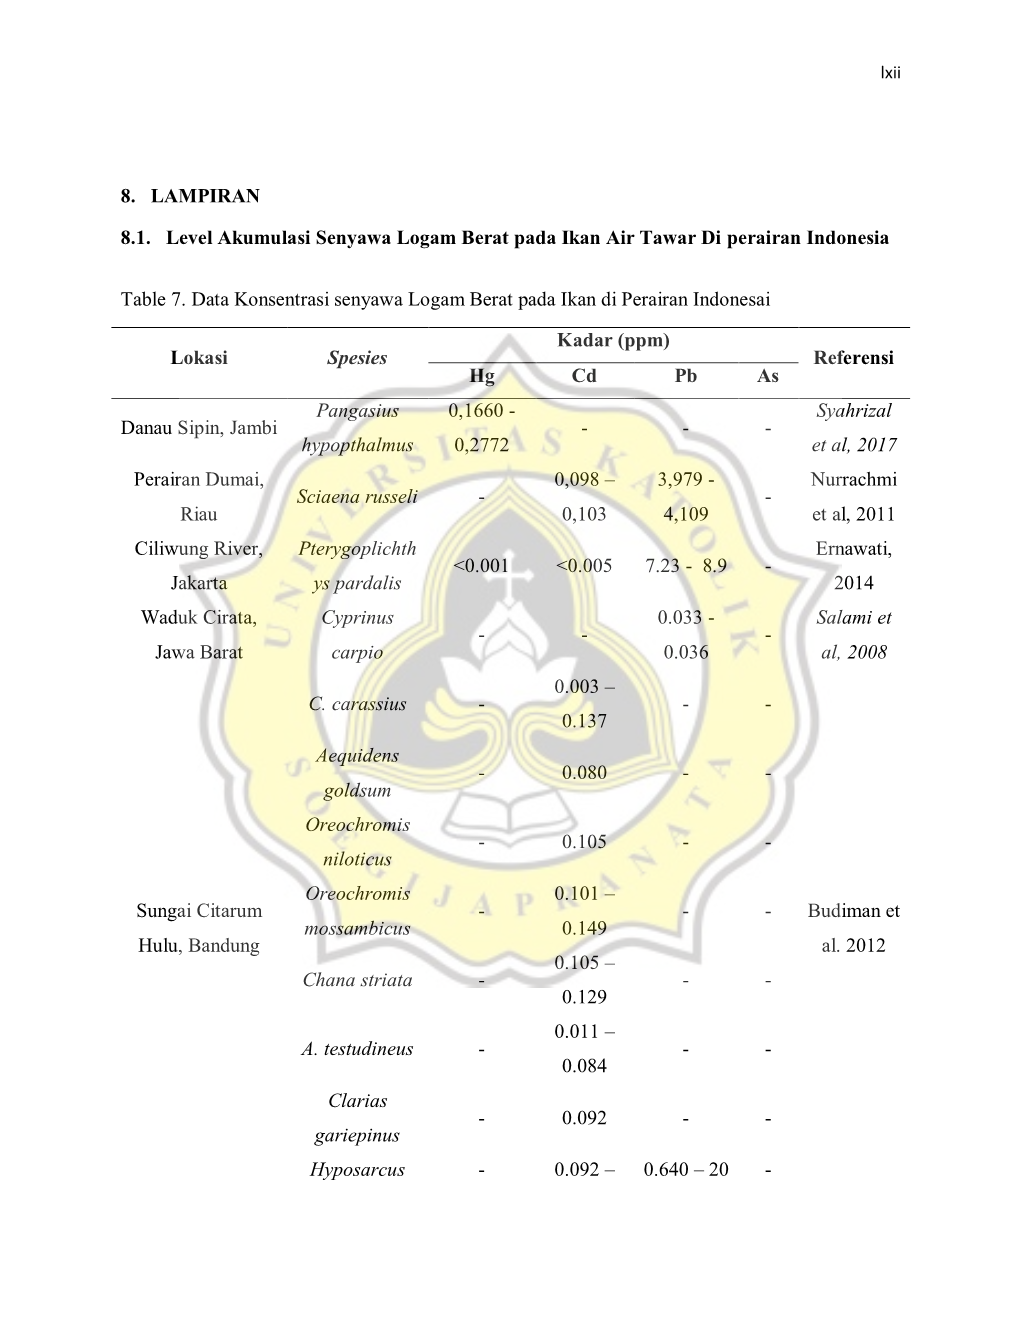 8. LAMPIRAN 8.1. Level Akumulasi Senyawa Logam Berat Pada Ikan Air Tawar Di Perairan Indonesia Table 7. Data Konsentrasi Senyawa